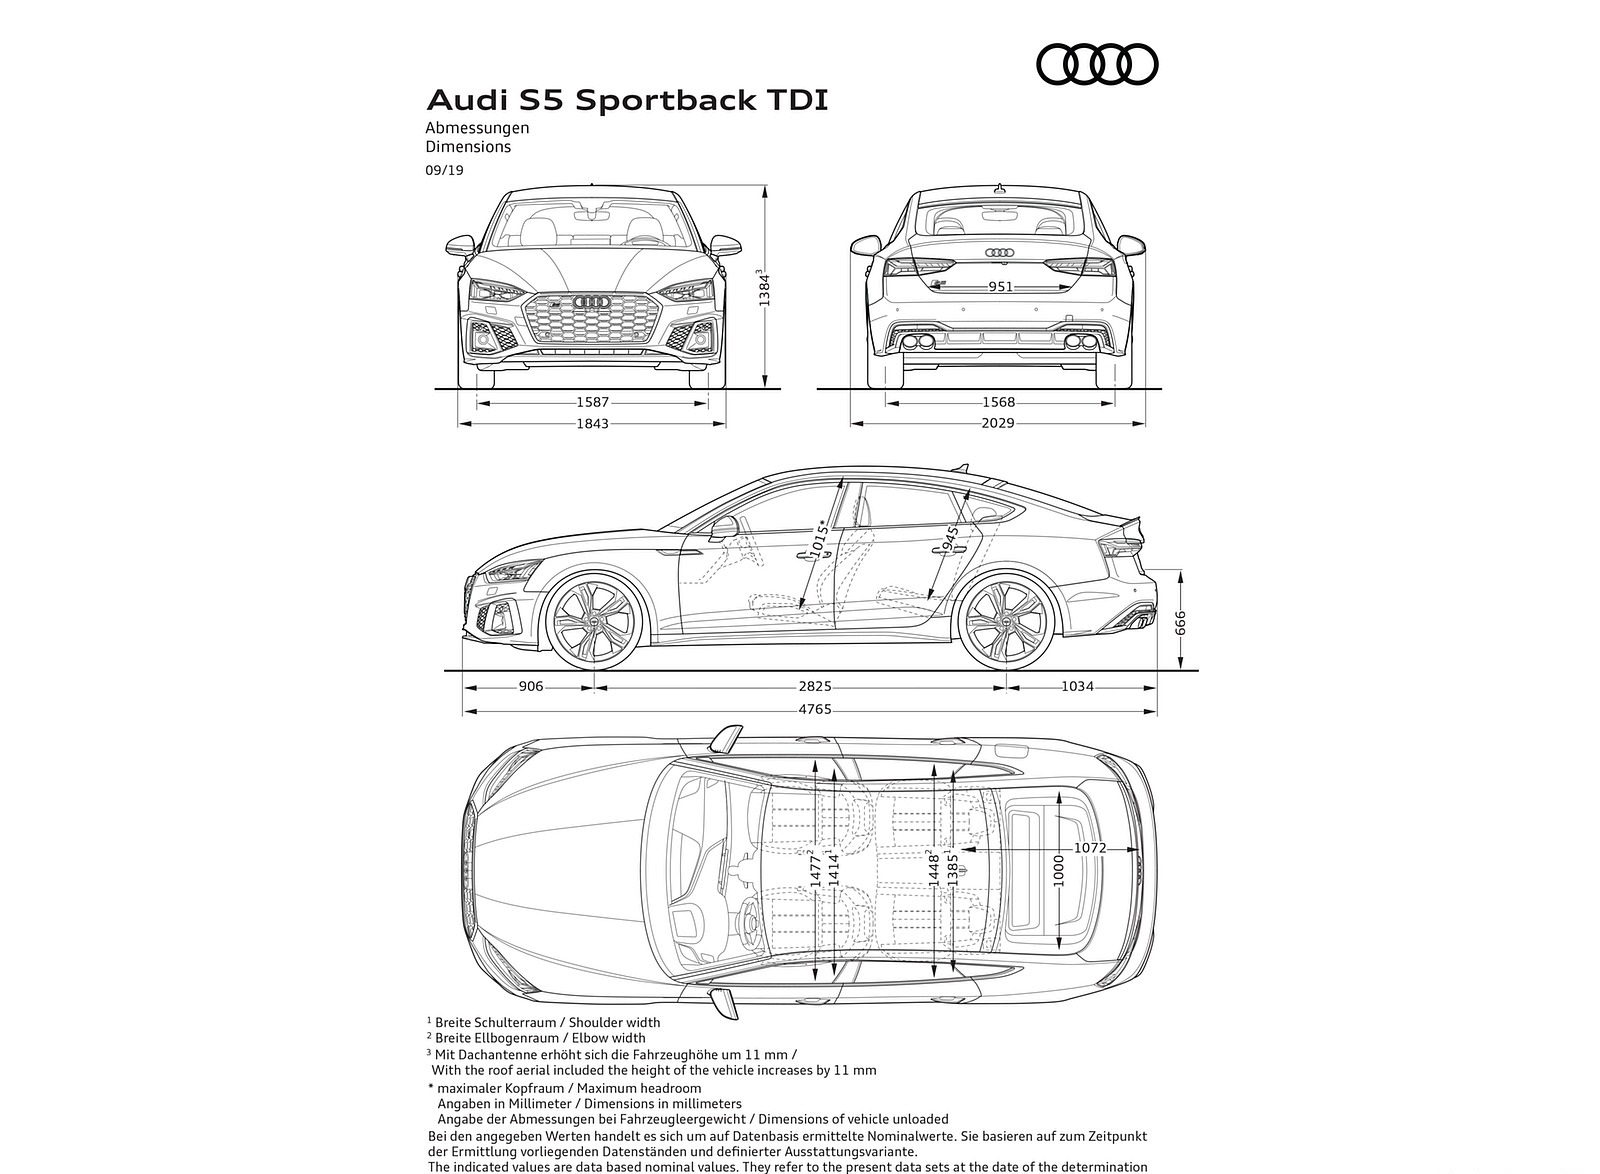 2020 Audi S5 Sportback TDI Dimensions Wallpapers #29 of 29